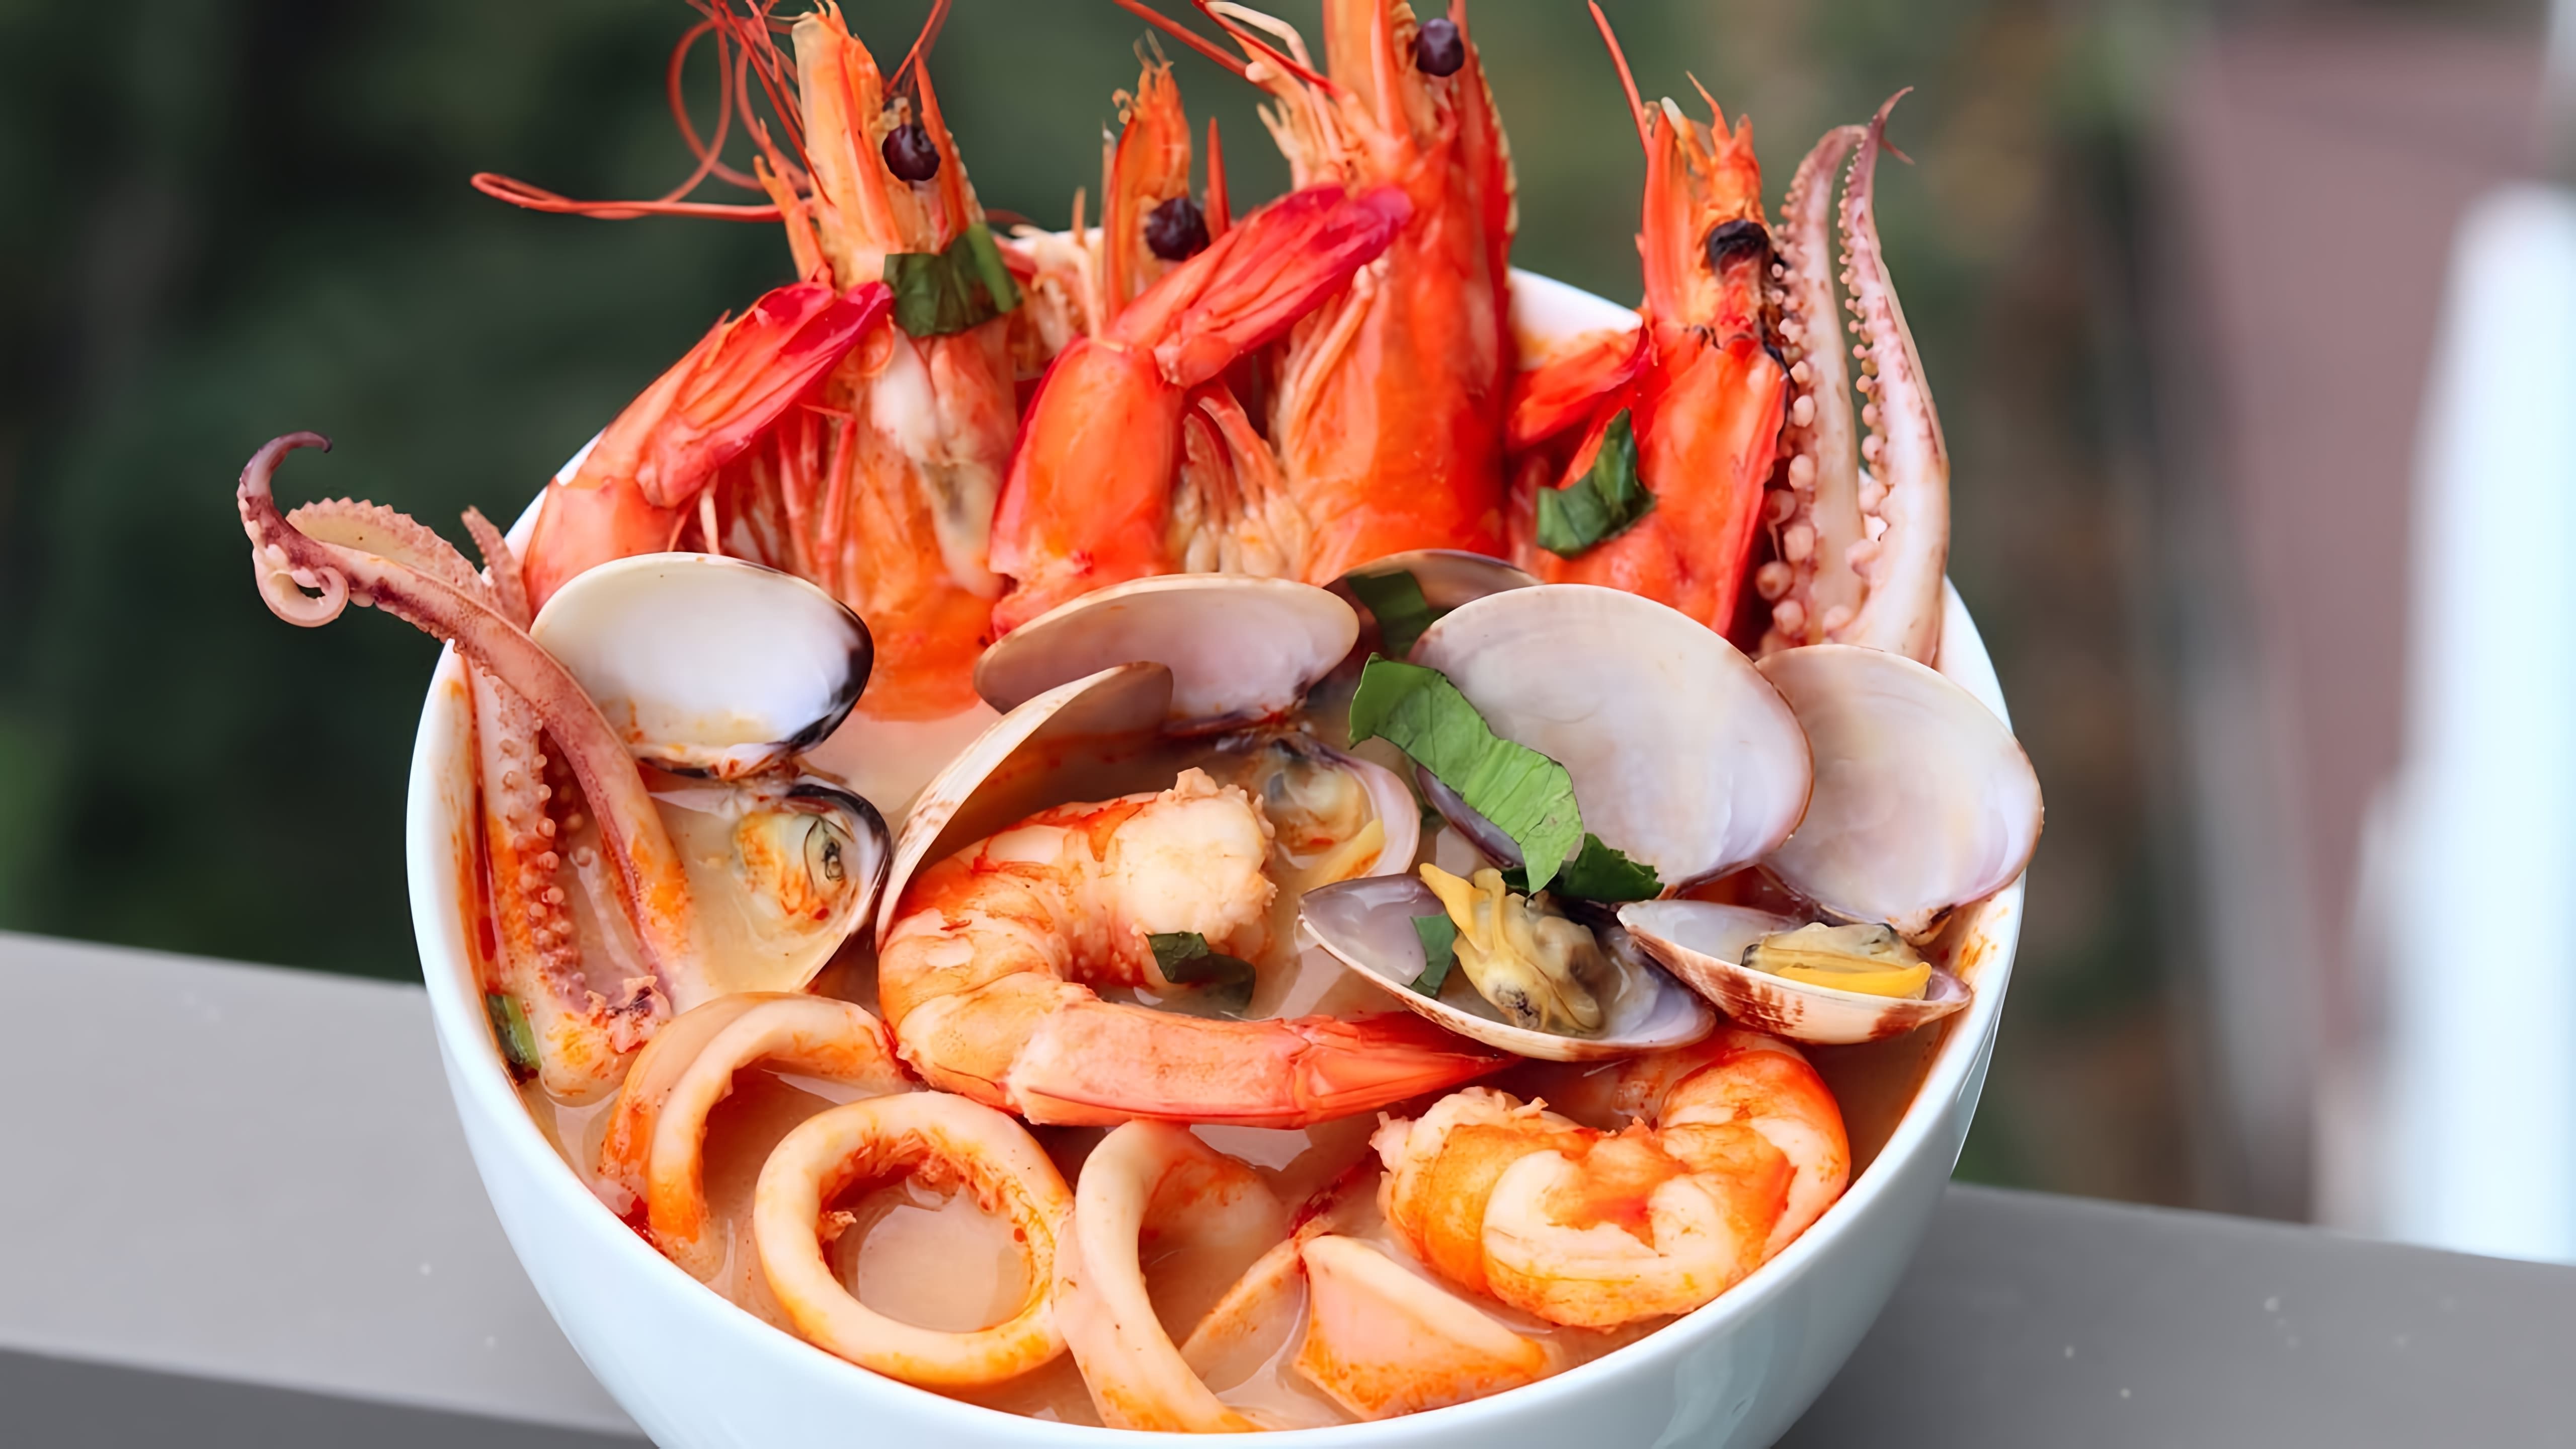 В этом видео демонстрируется процесс приготовления традиционного тайского супа "Том Ям" с морепродуктами